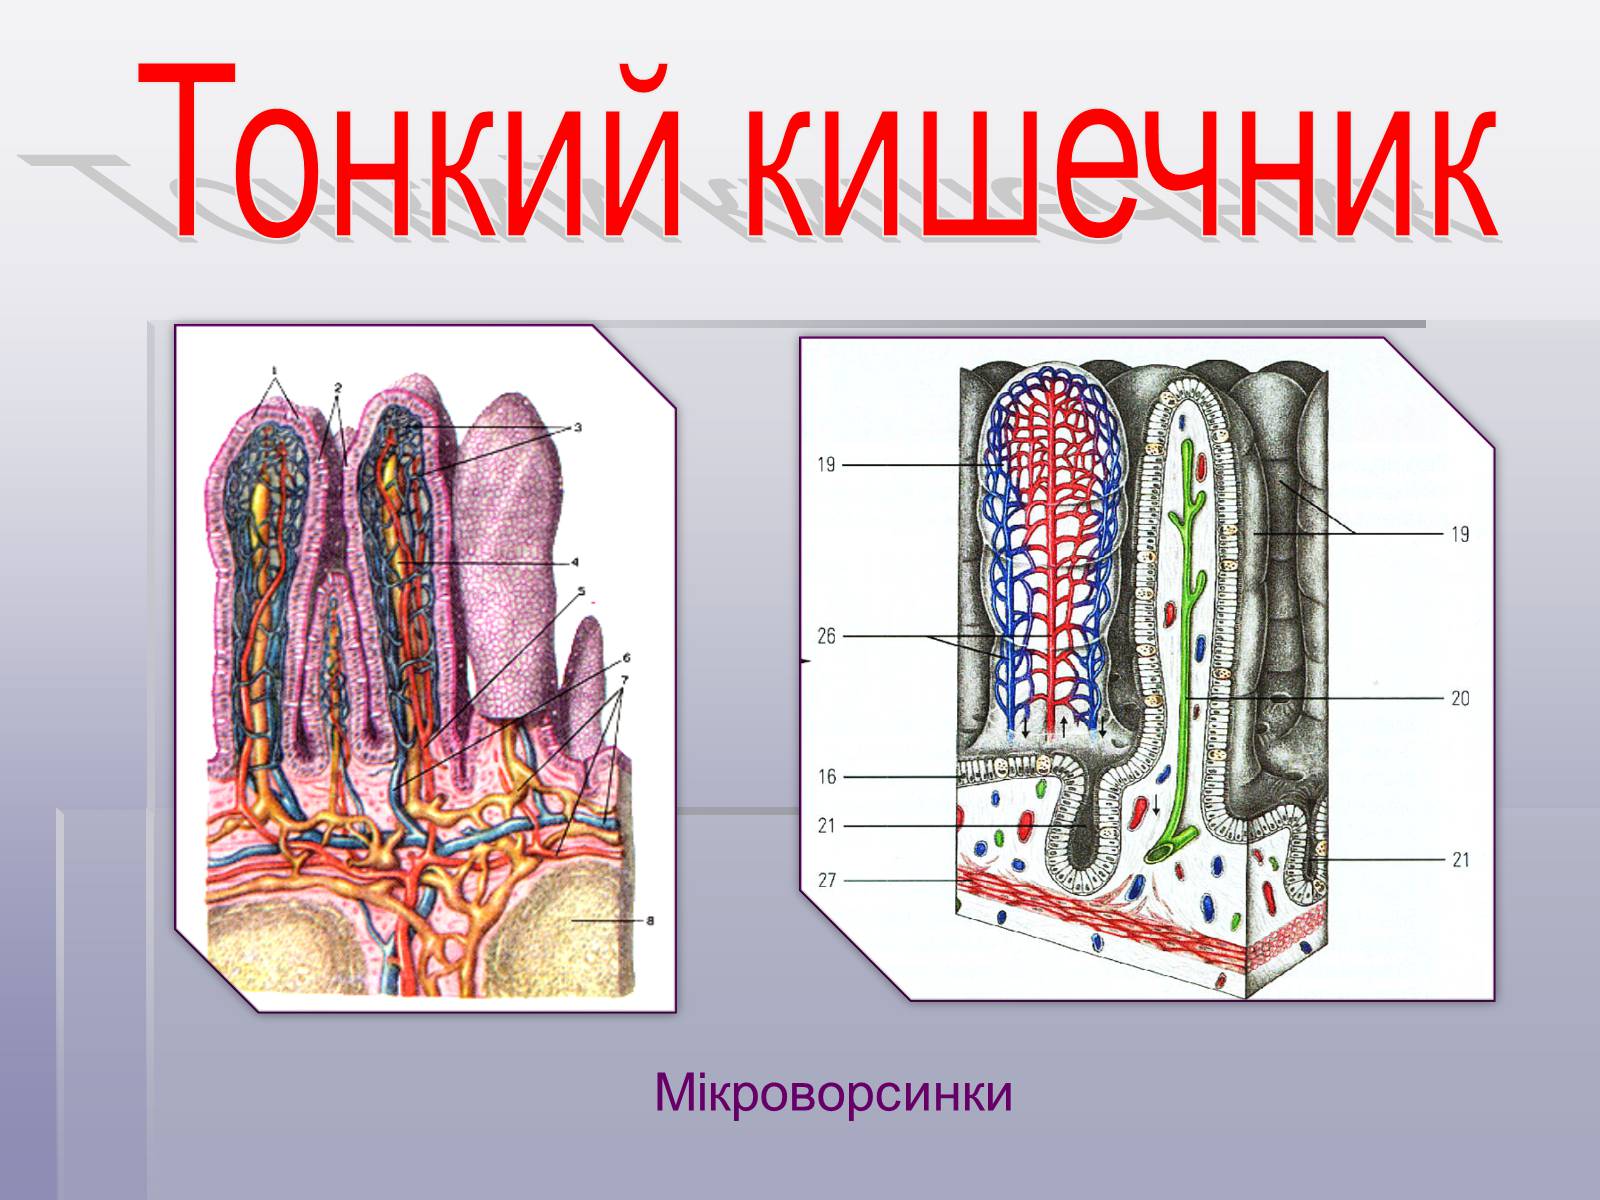 Функция ворсинок тонкого кишечника. Строение кишечной ворсинки анатомия. Ворсинки и микроворсинки. Ворсинки тонкого кишечника. Ворсинки тонкого кишечника анатомия.